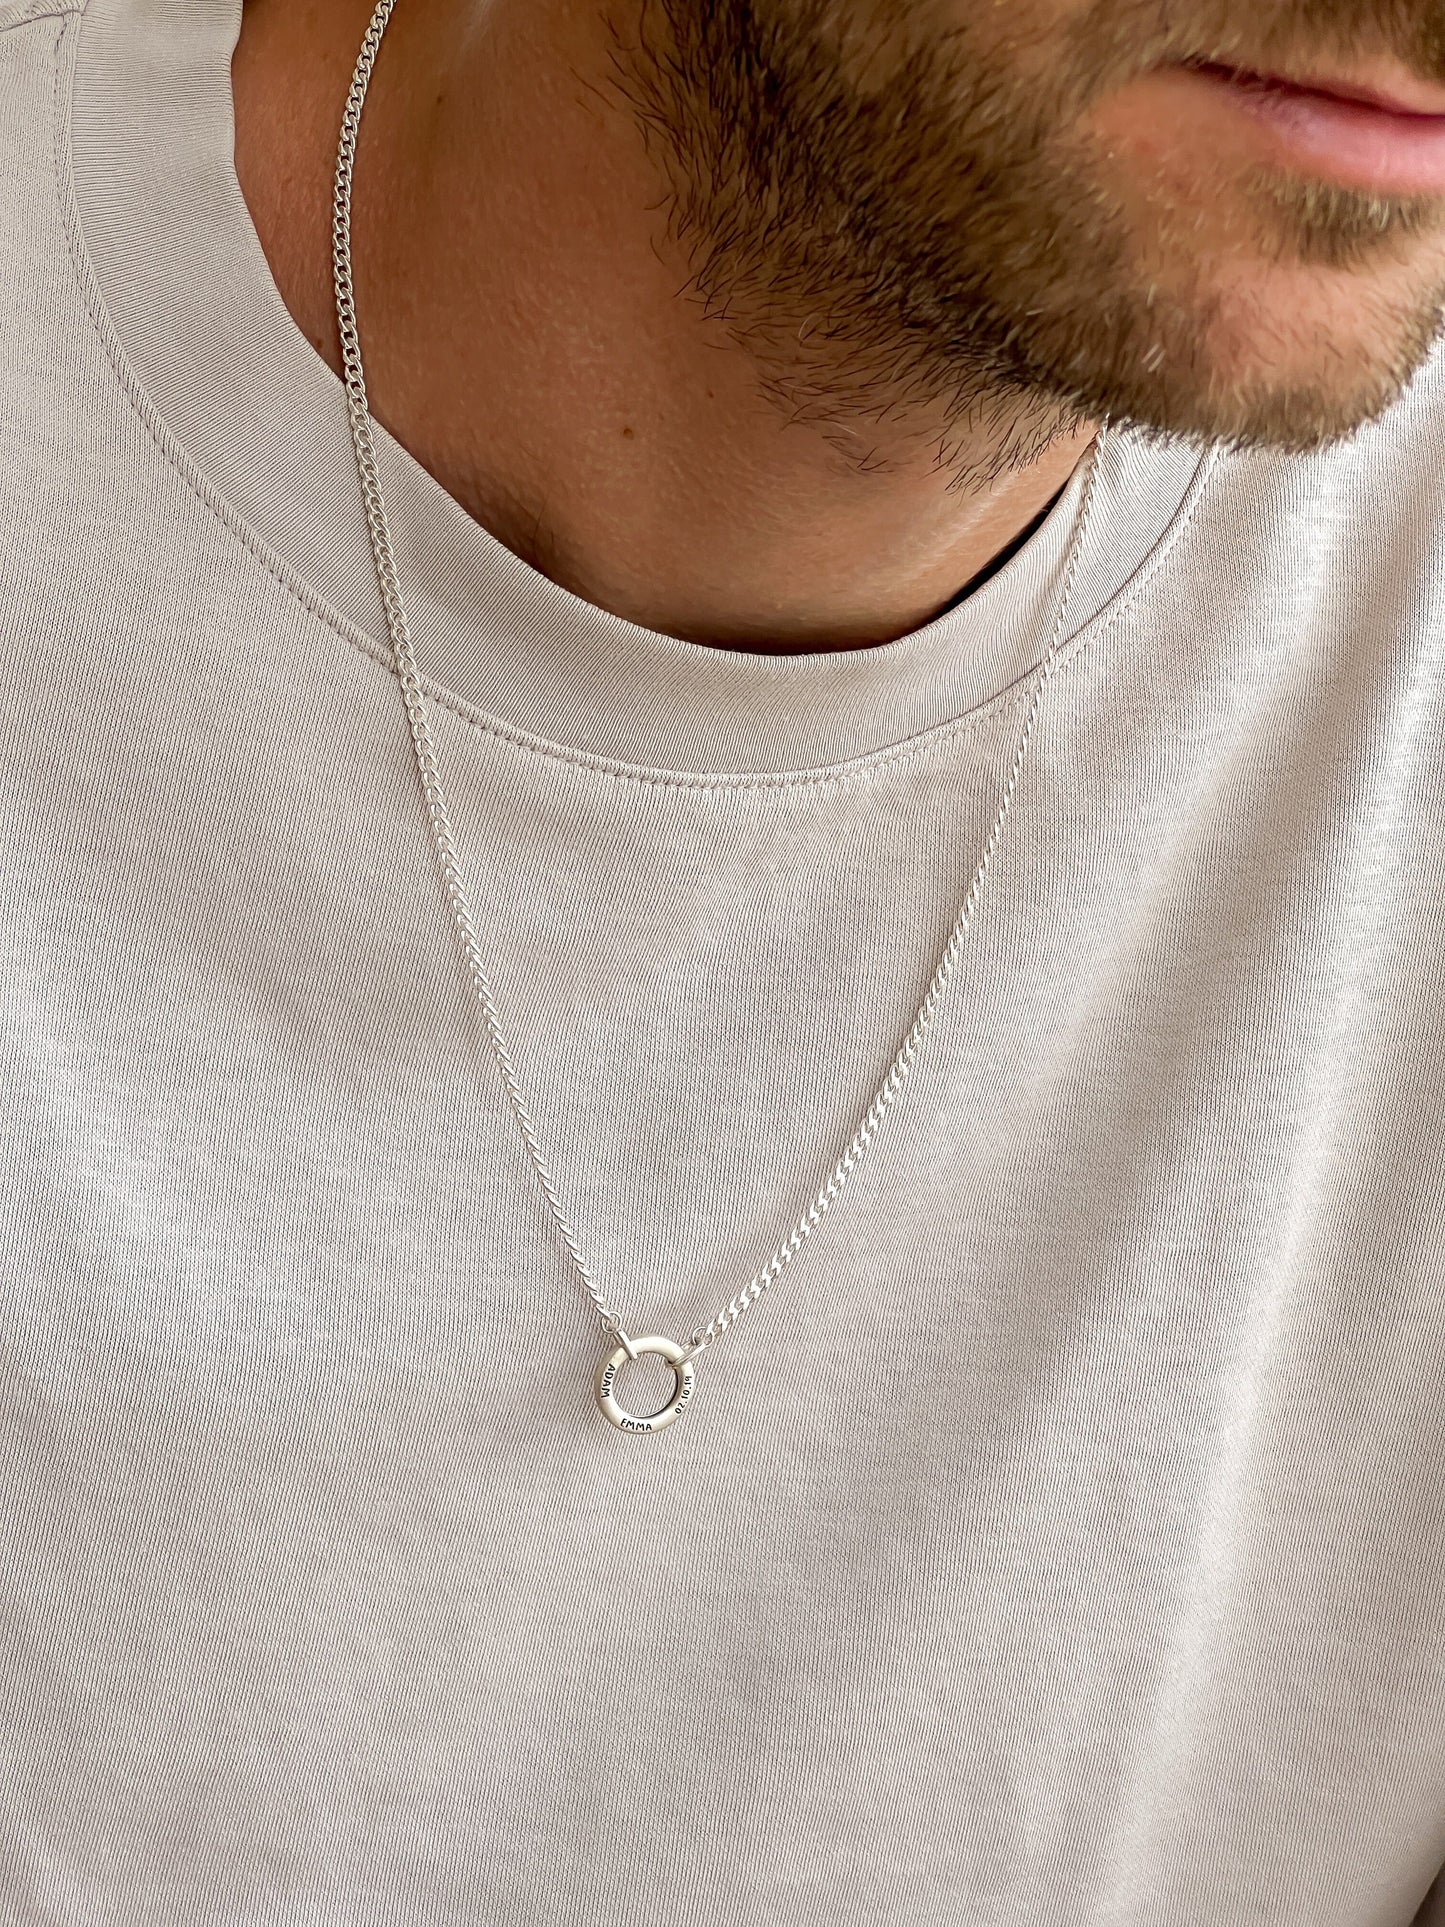 Men's Family Circle Necklace - 18K Gold Vermeil Necklaces magal-dev 